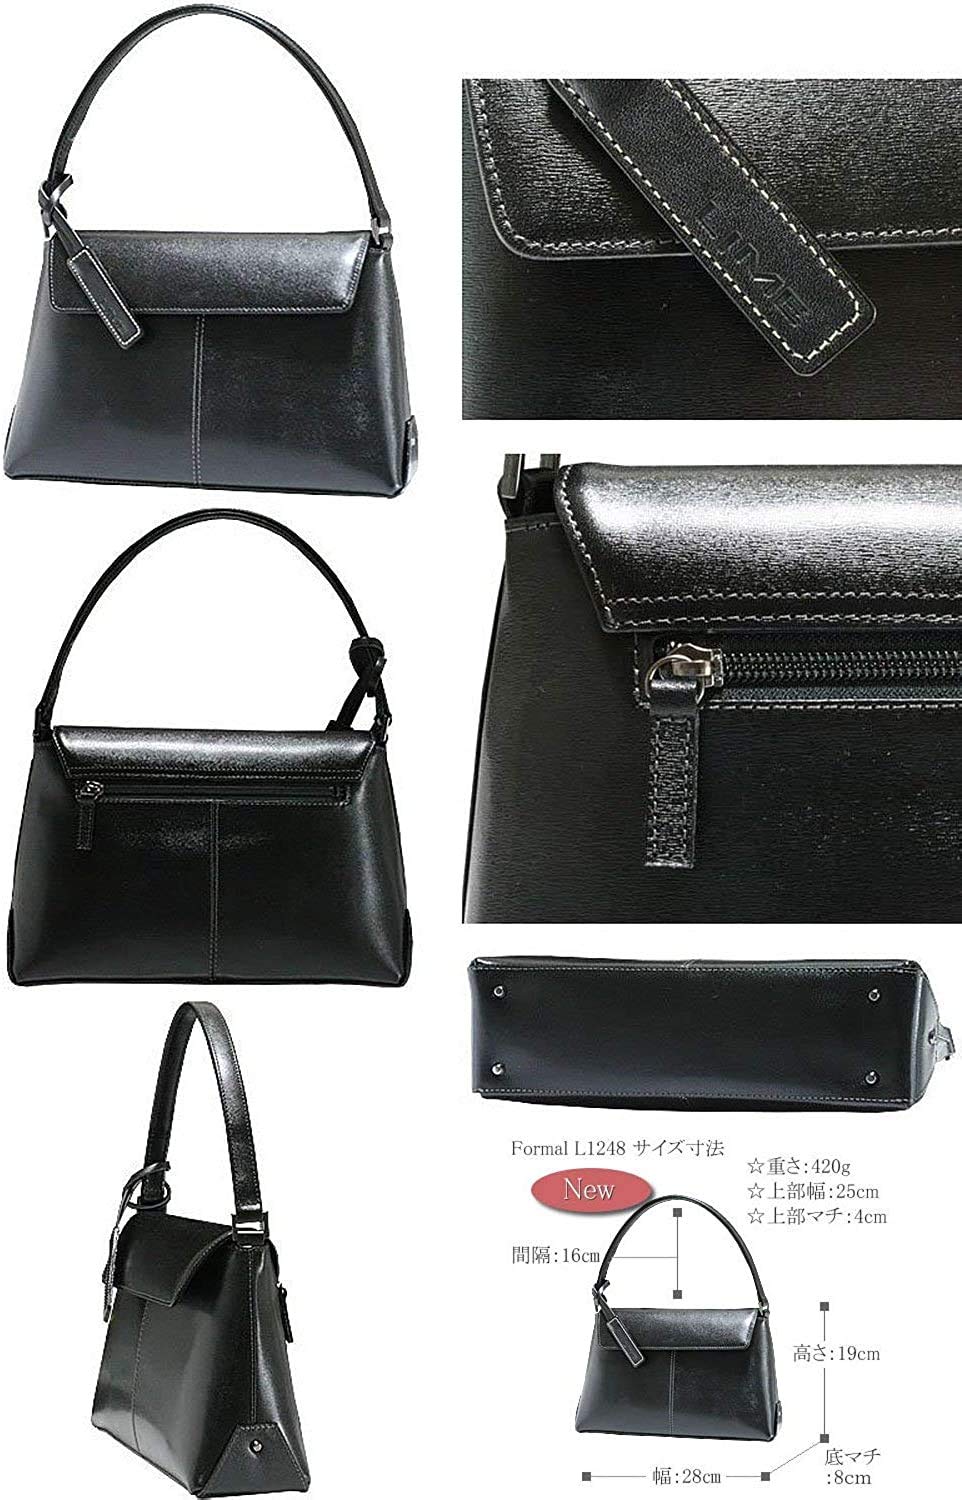 Lime Made in Japan L1248 Women's Formal Bag, Handbag, Black, Formal, Water Repellent, Leather, Made in Japan, Formal